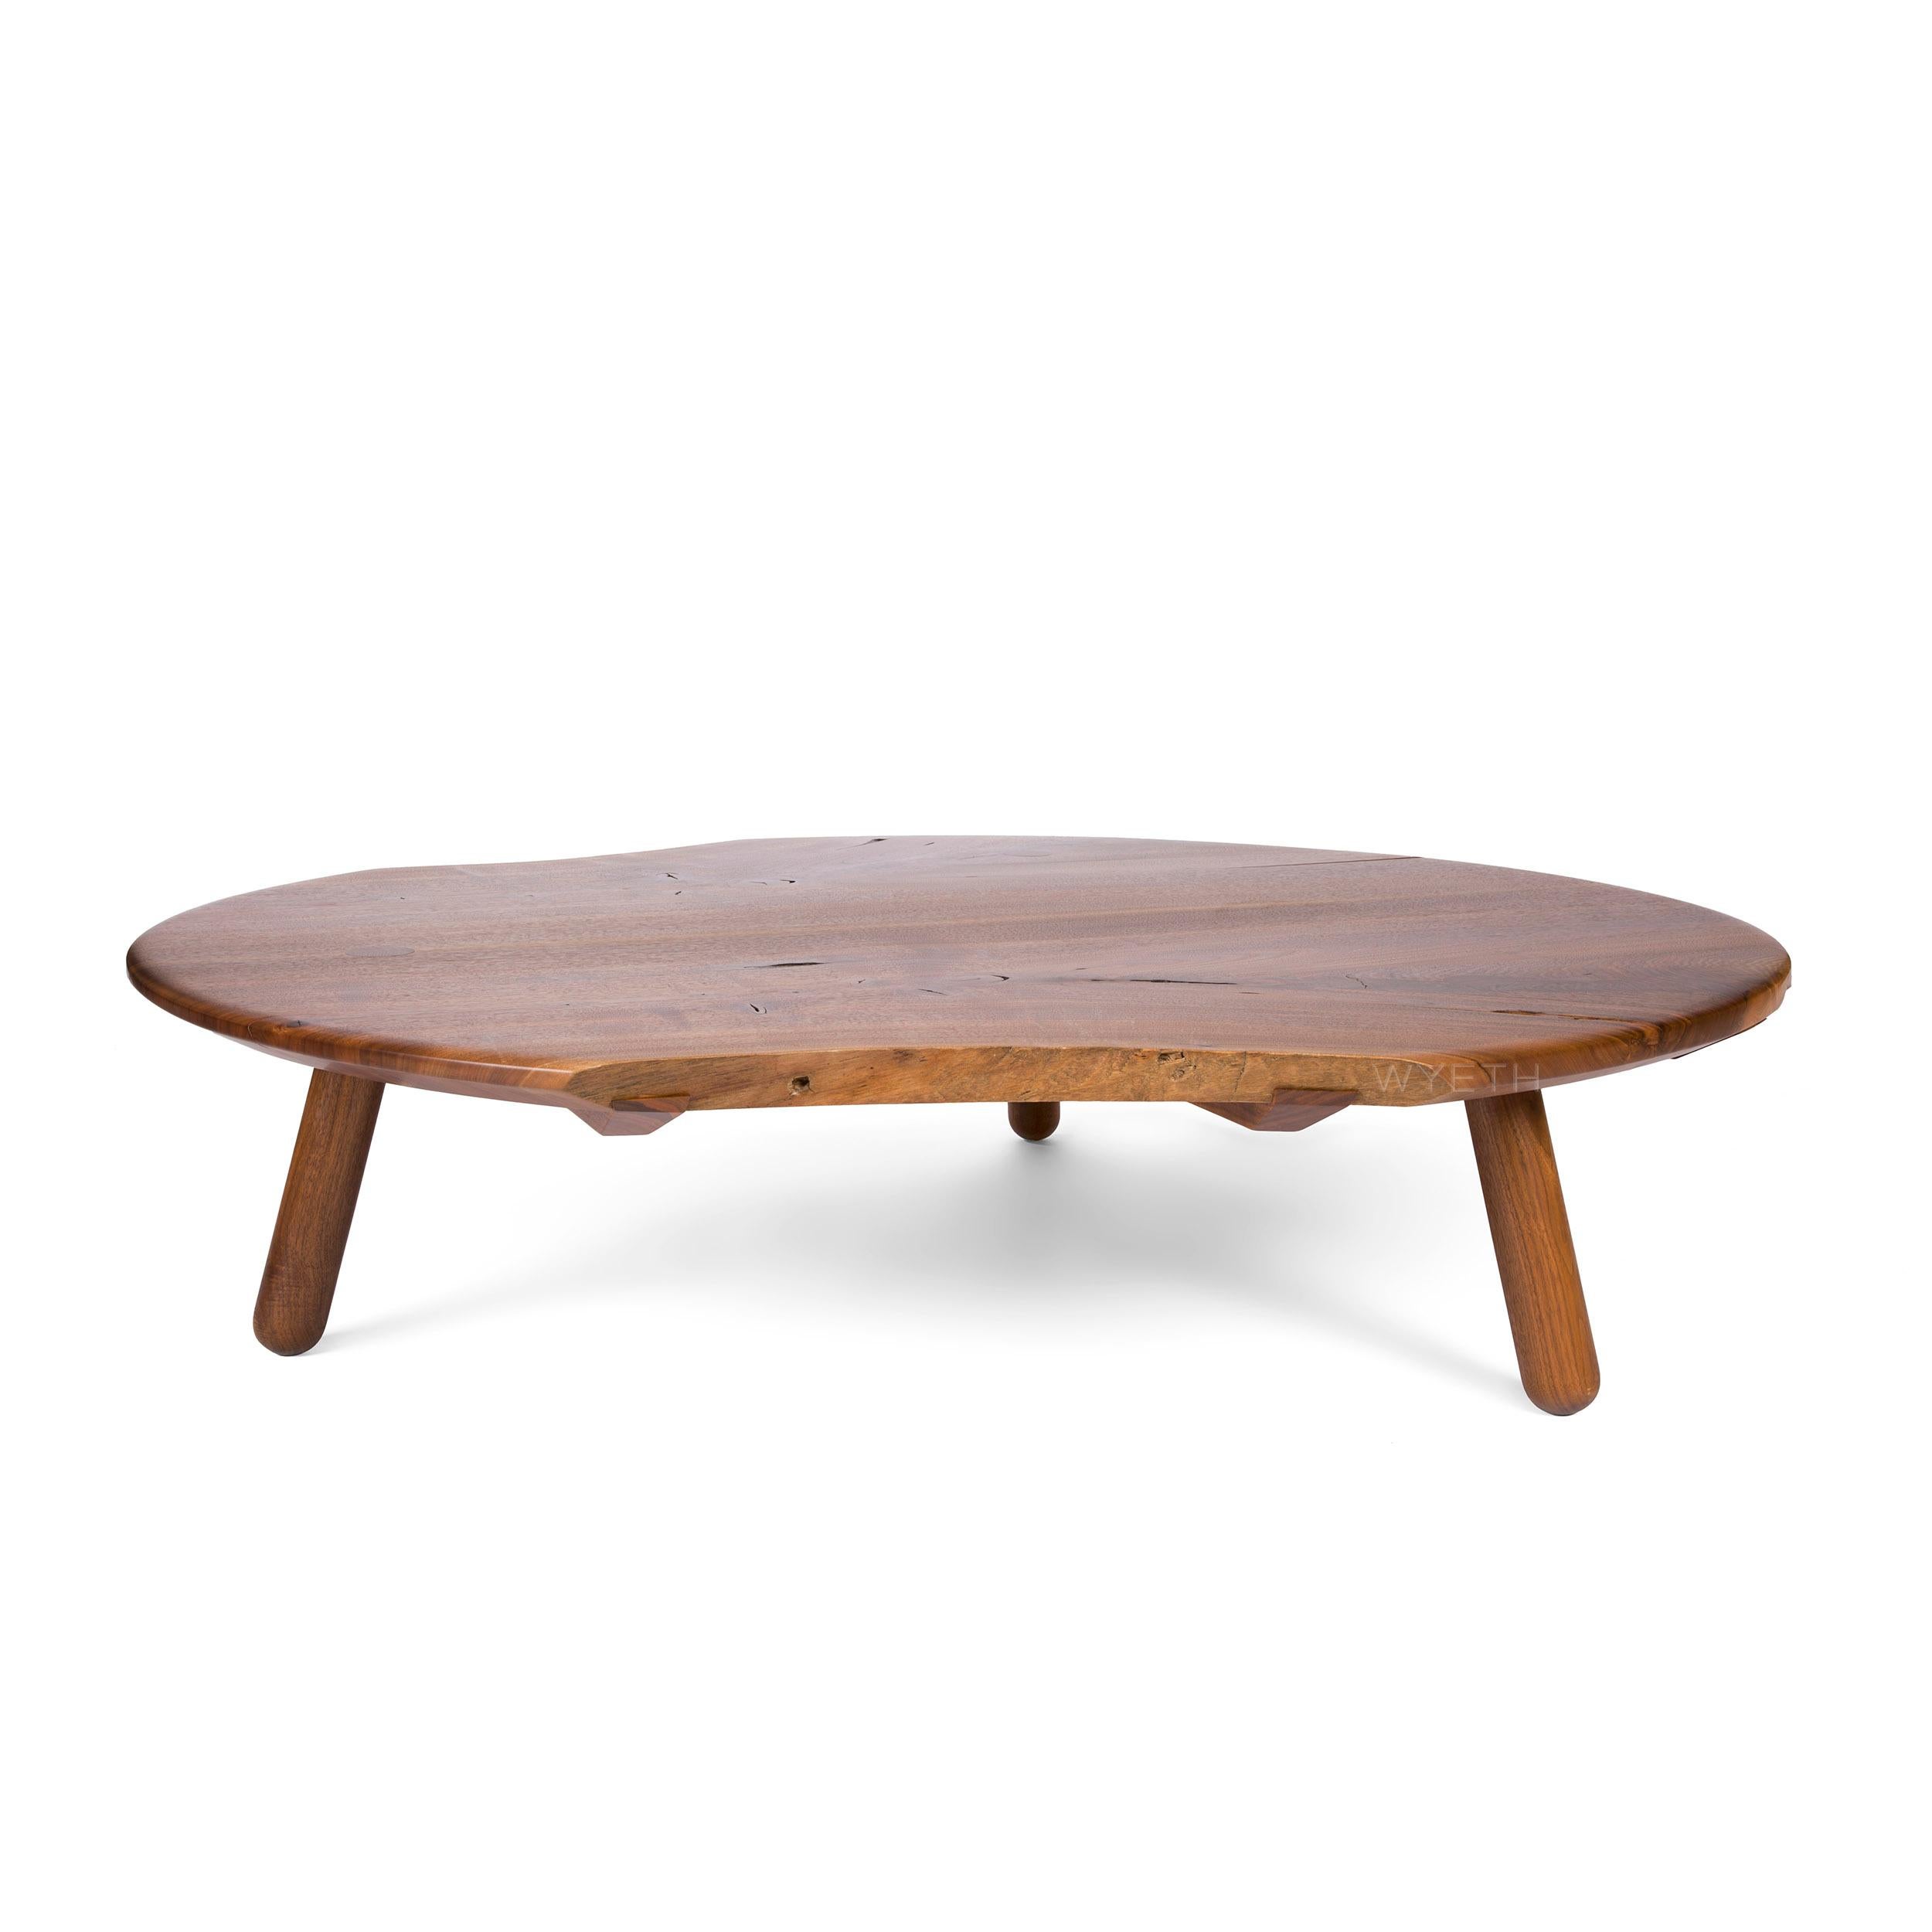 Ein handgefertigter, niedriger Tisch aus Nussbaumholz mit runder Form, natürlichen, dem Holz innewohnenden Kanten und drei (3) massiven, gedrechselten Beinen, die durch die Platte hindurchgeführt sind. Die Platte besteht aus lebenden Kanten und